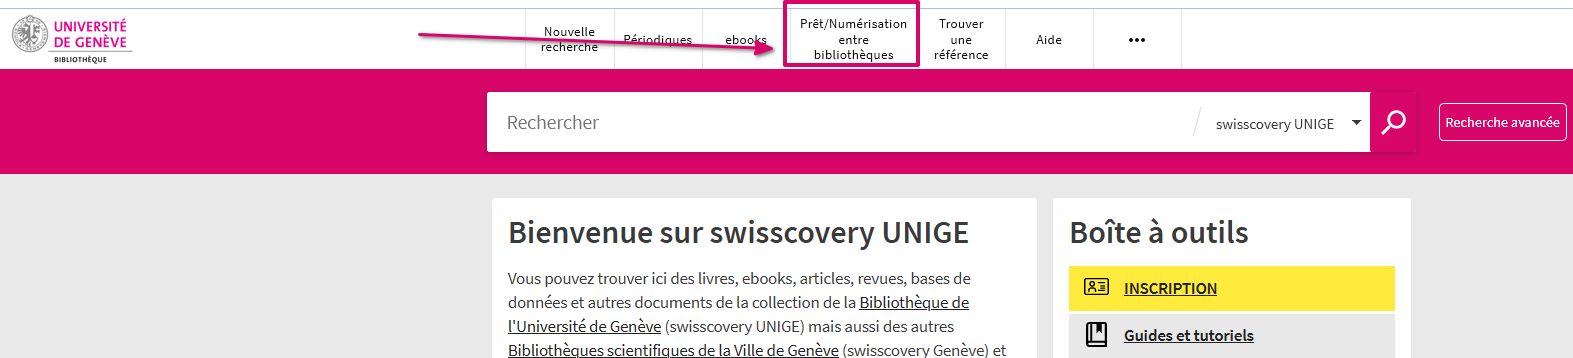 Capture d'écran du lien vers le formulaire de commande                       dans le menu supérieur de Swisscovery UNIGE.